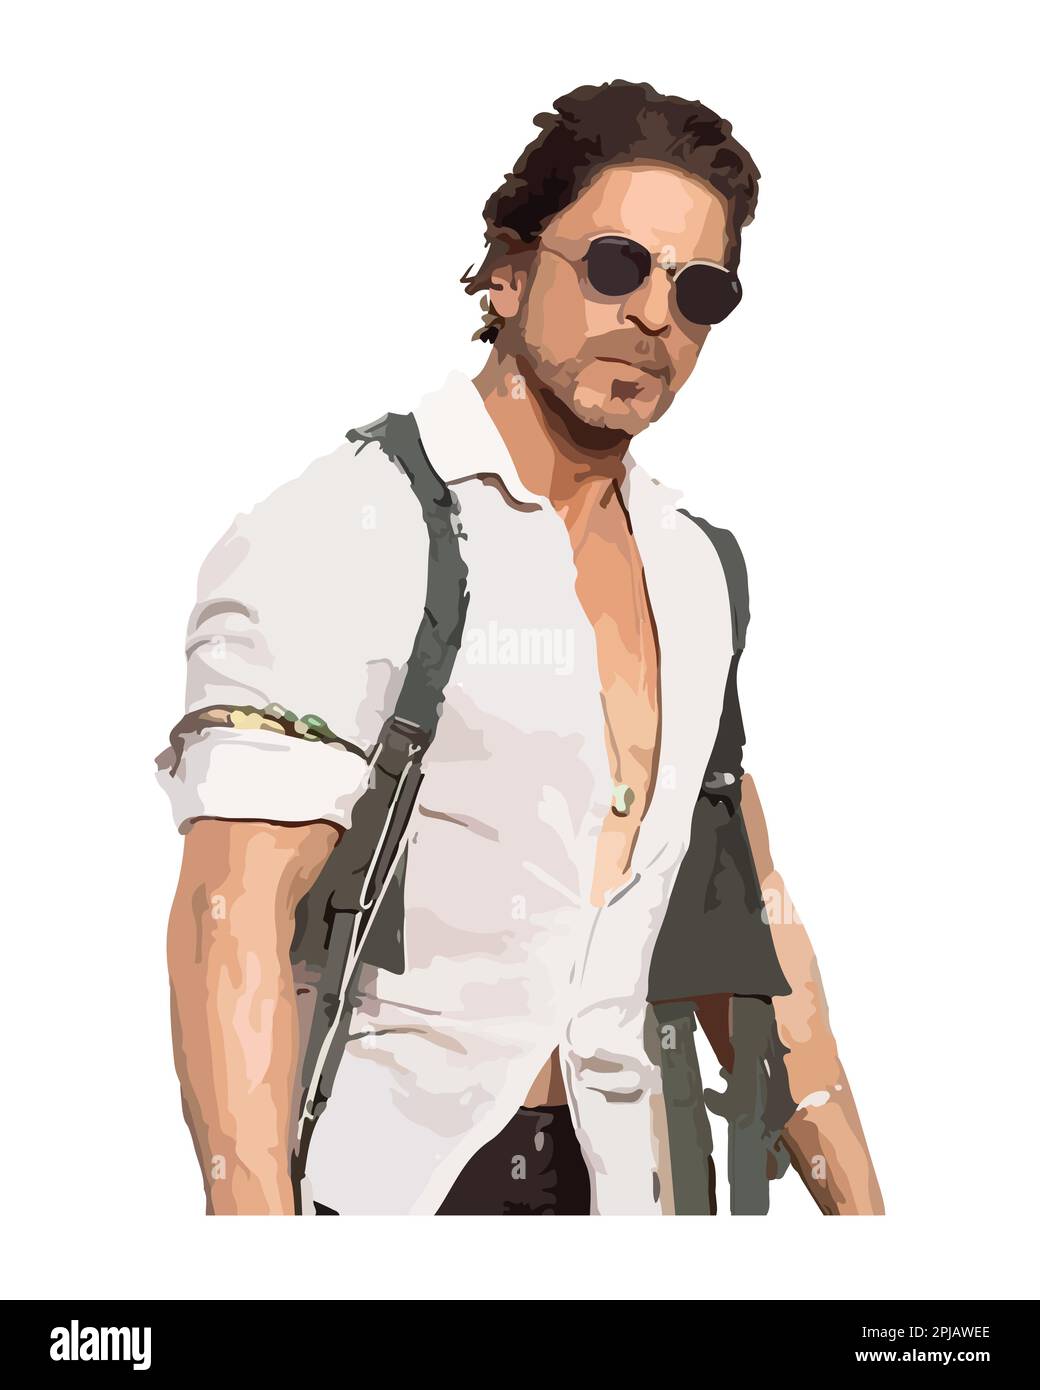 Shah Rukh Khan acteur indien Illustration vectorielle image abstraite Illustration de Vecteur